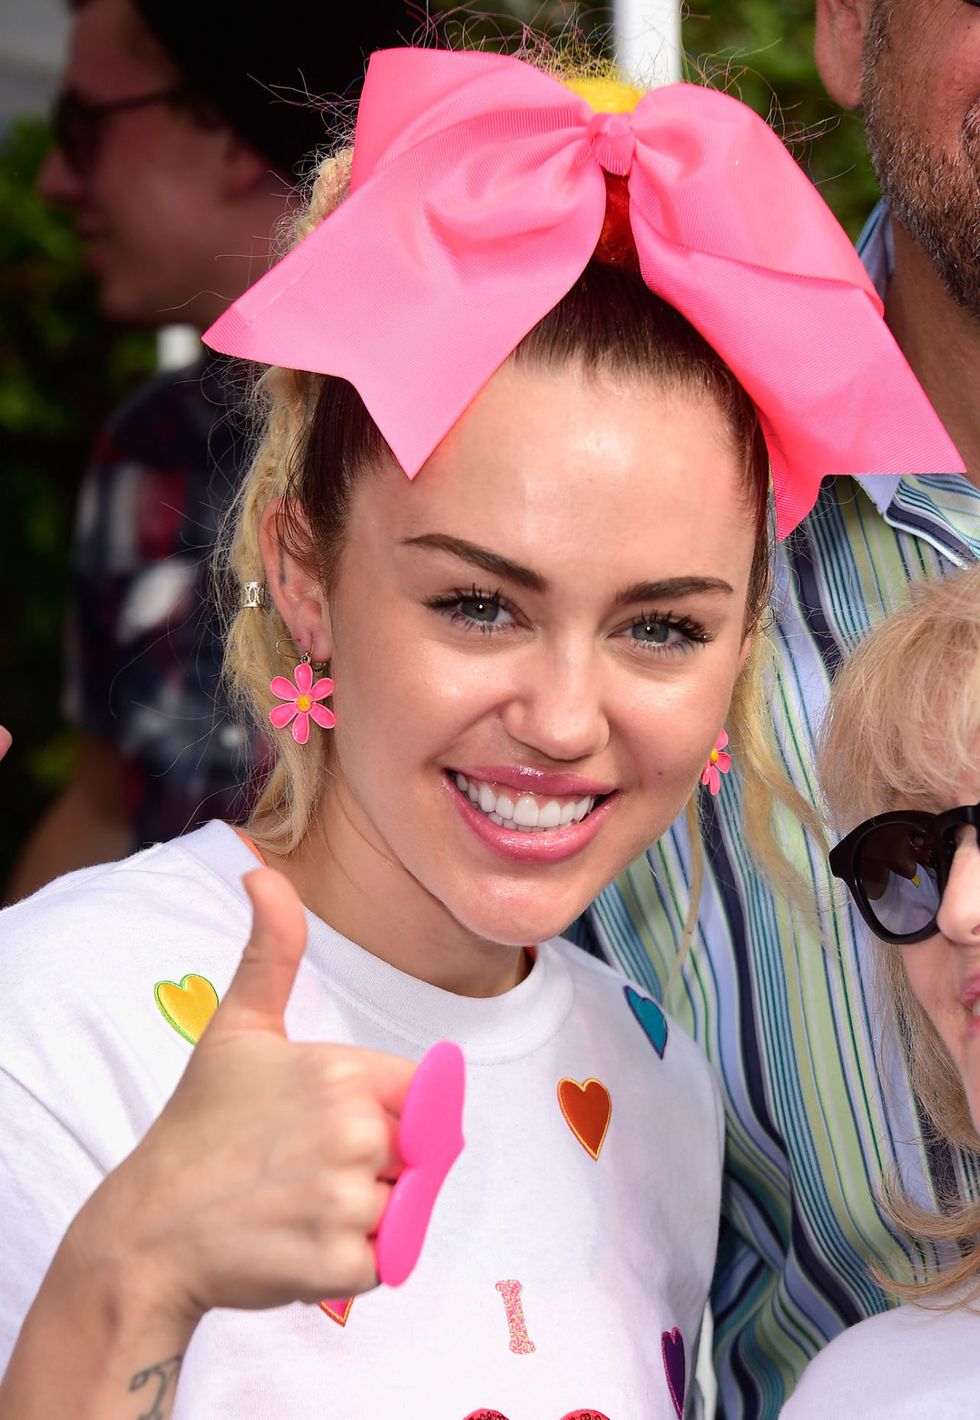 <p>Nel 2015 Miley Cyrus ha dichiarato di essere pansessuale e poi in seguito ha specificato di essere gender-neutral. La pansessualità è uno degli orientamenti sessuali dell'essere umano che è caratterizzato da una potenziale attrazione la persona in sé, indipendentemente dal suo sesso e identità di genere.</p>